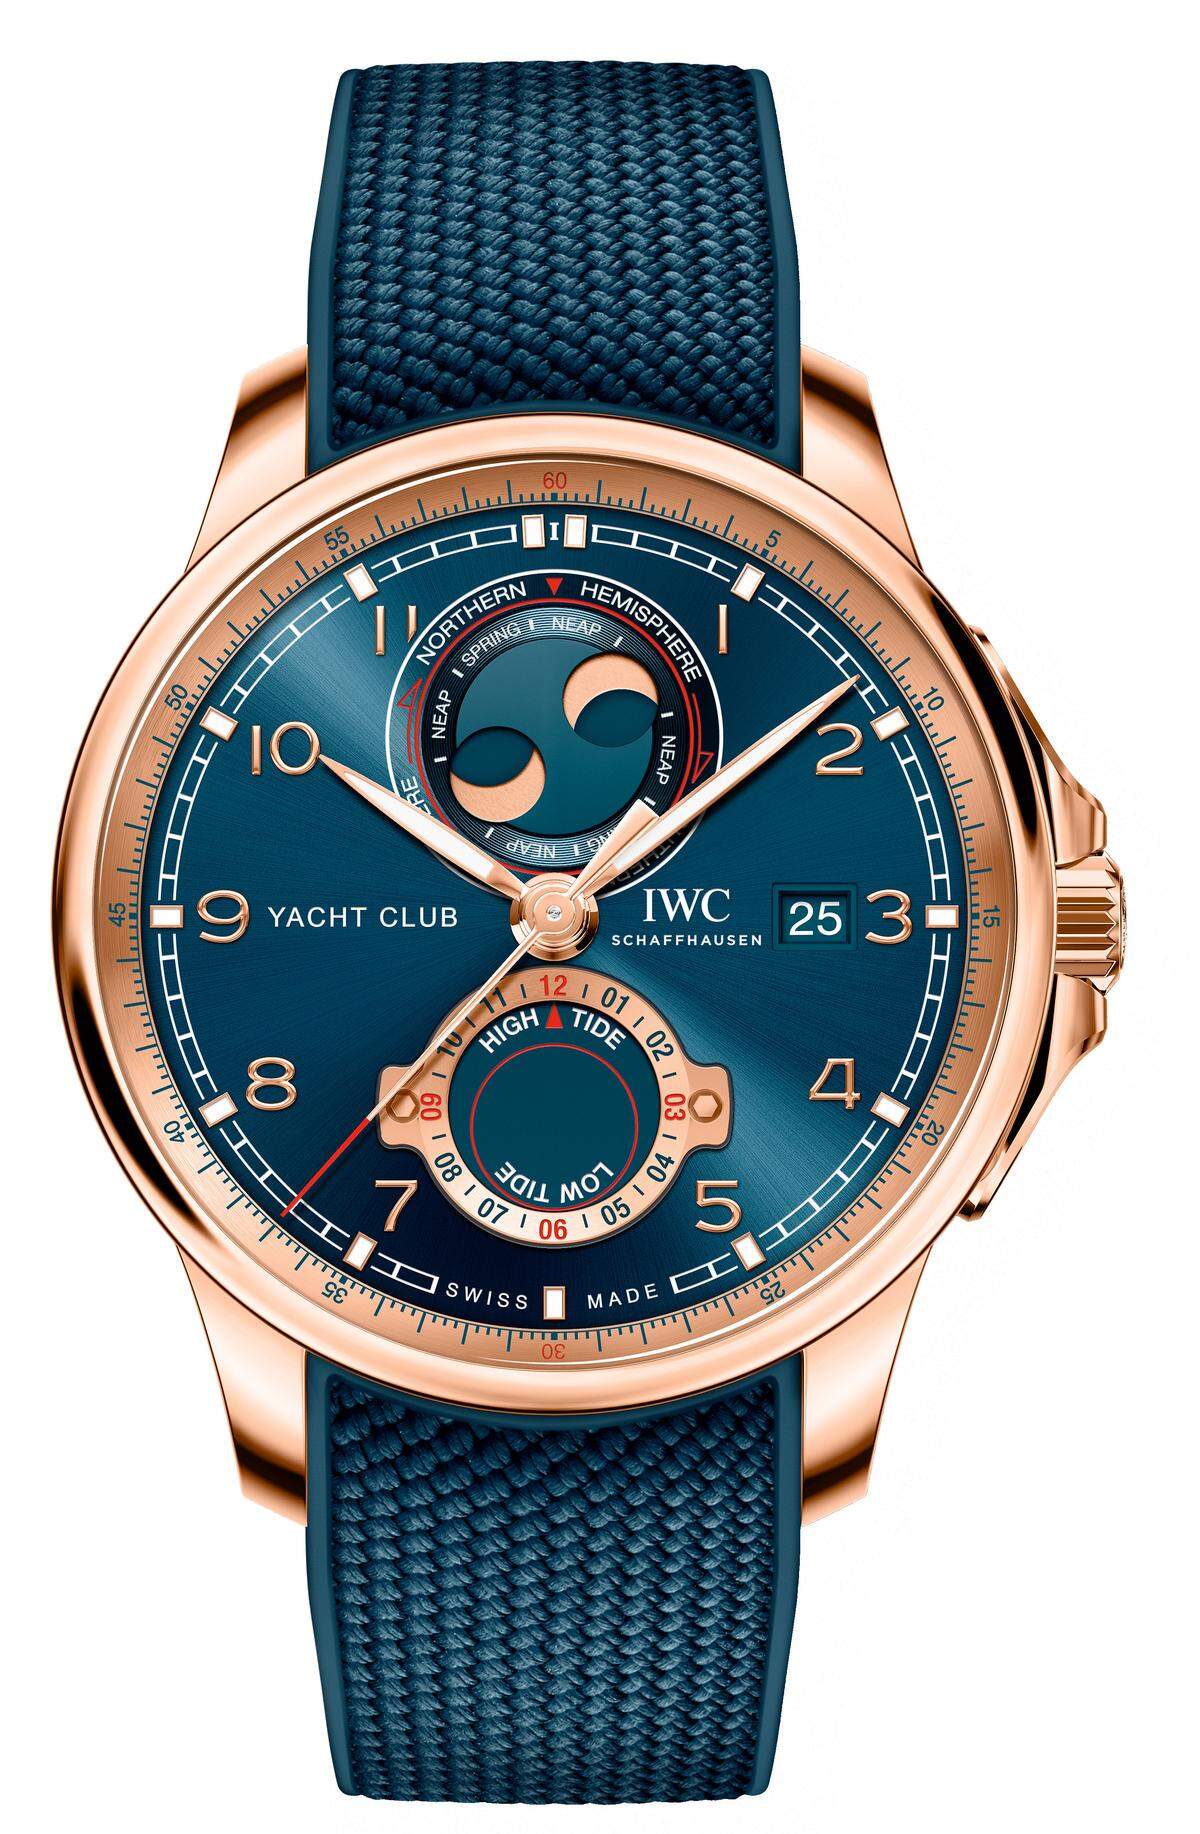 IWC "Portugieser Yacht Club Moon & Tide". Der Schaffhausener Uhrenhersteller erweitert heuer seine "Portugieser"-Linie um neue Modelle. Dabei kommt es auch zu einer Premiere: Erstmals hat die Manufaktur eine Uhr mit Gezeitenanzeige entwickelt. Diese informiert über den Zeitpunkt für das nächste Hoch- bzw. Niedrigwasser.